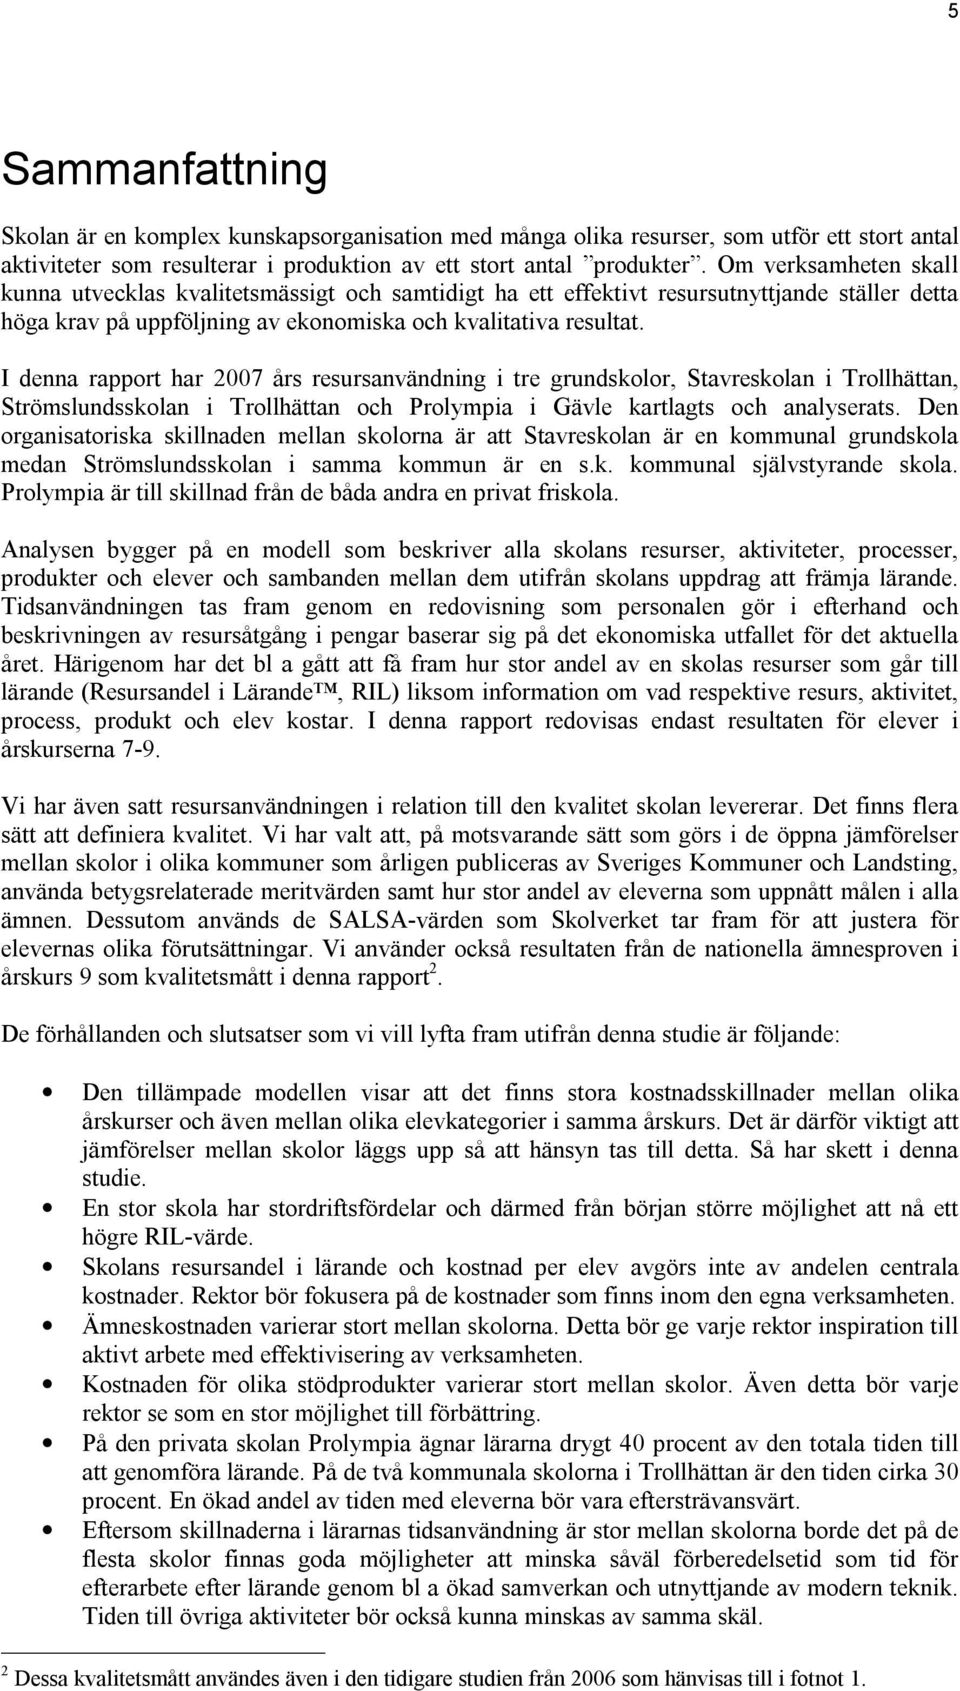 I denna rapport har 2007 års resursanvändning i tre grundskolor, Stavreskolan i Trollhättan, Strömslundsskolan i Trollhättan och Prolympia i Gävle kartlagts och analyserats.